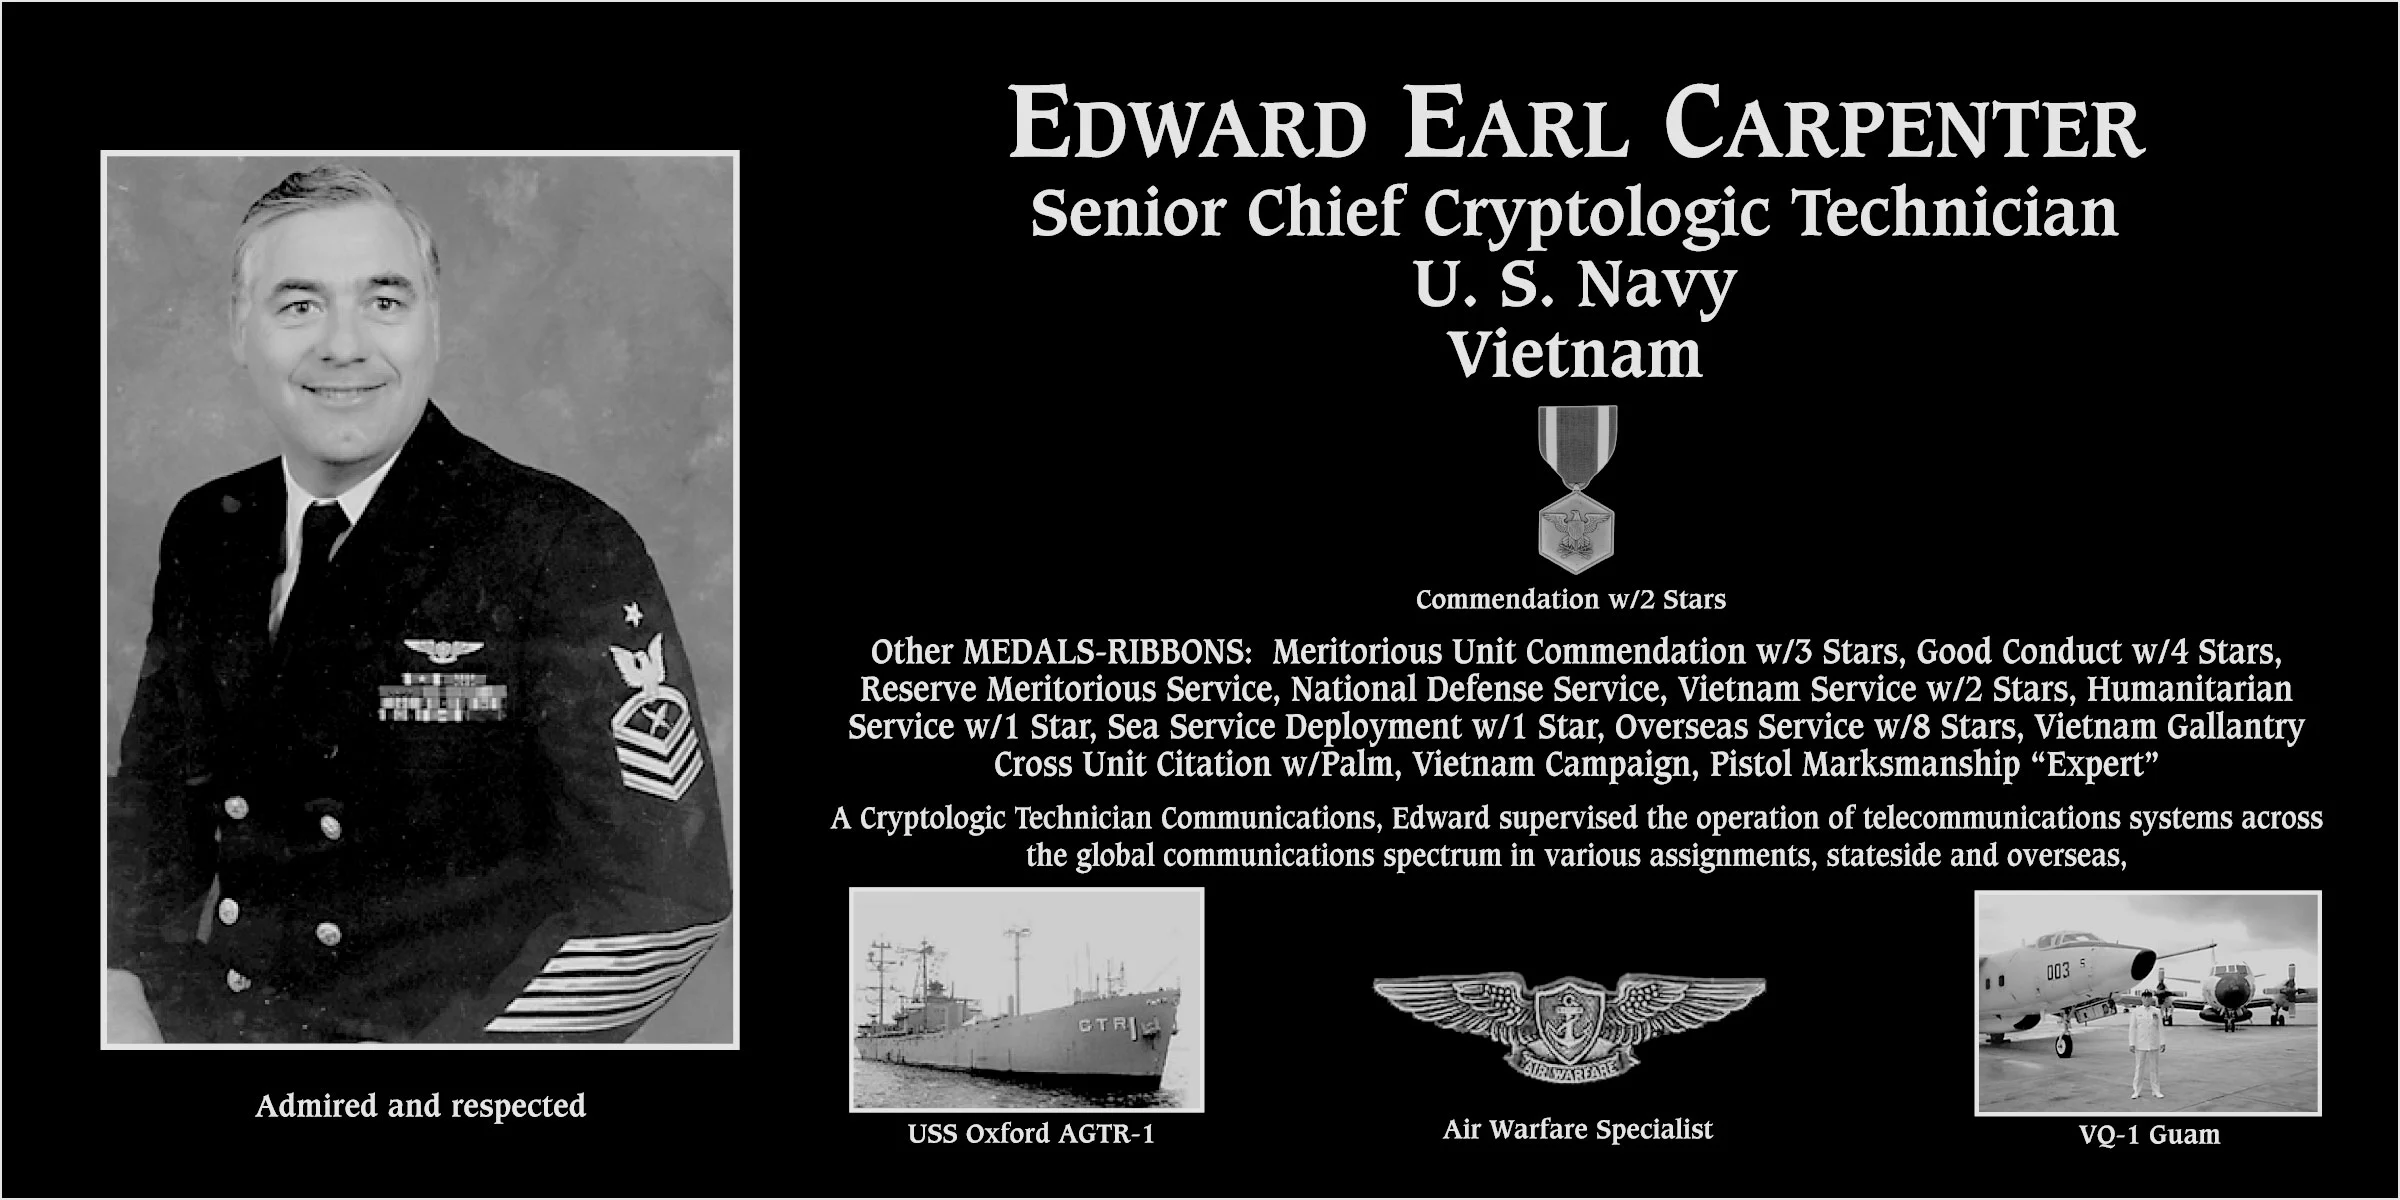 Edward Earl Carpenter